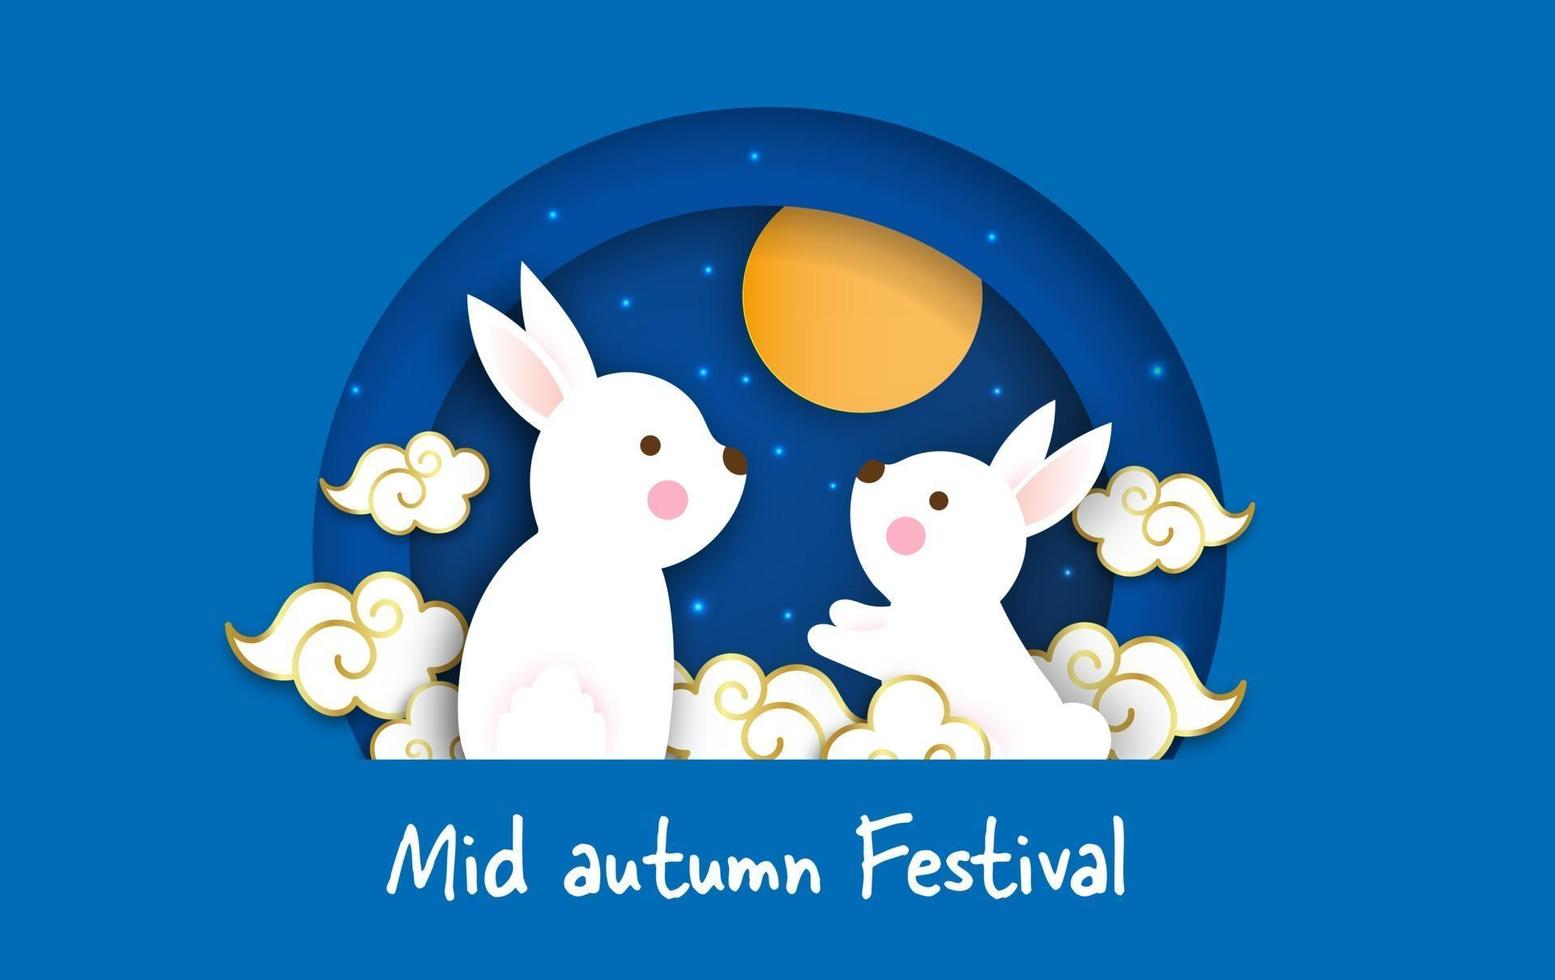 banner festival meados de outono com coelhos bonitos em estilo de corte de papel. vetor